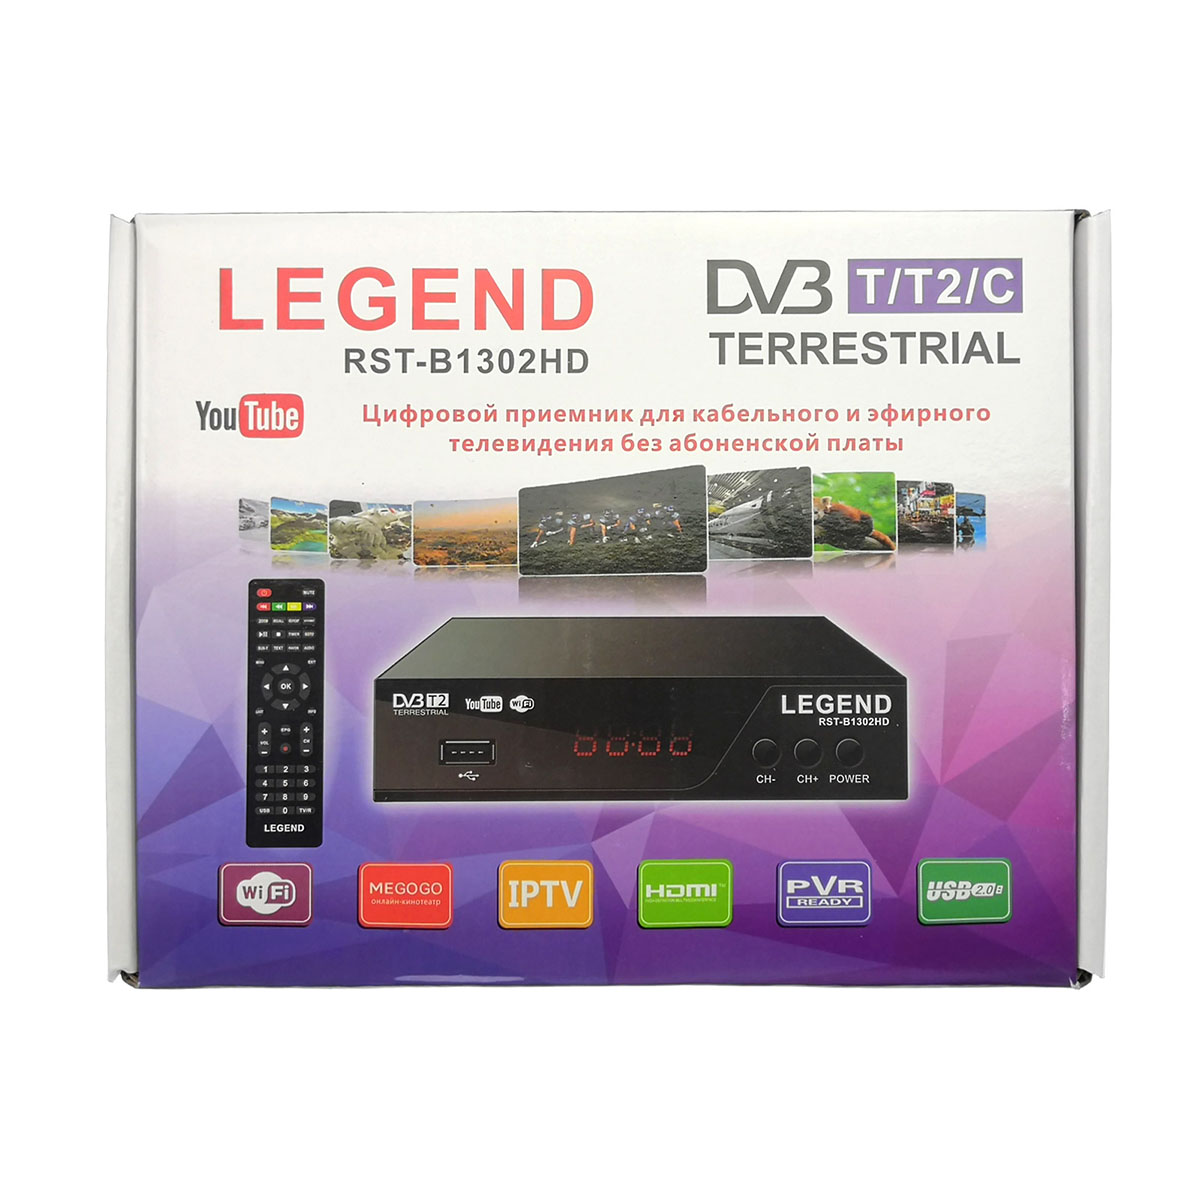 Цифровой эфирный приёмник LEGEND RST-B1302HD DVB-T/T2/C для кабельного и эфирного телевидения, цвет черный